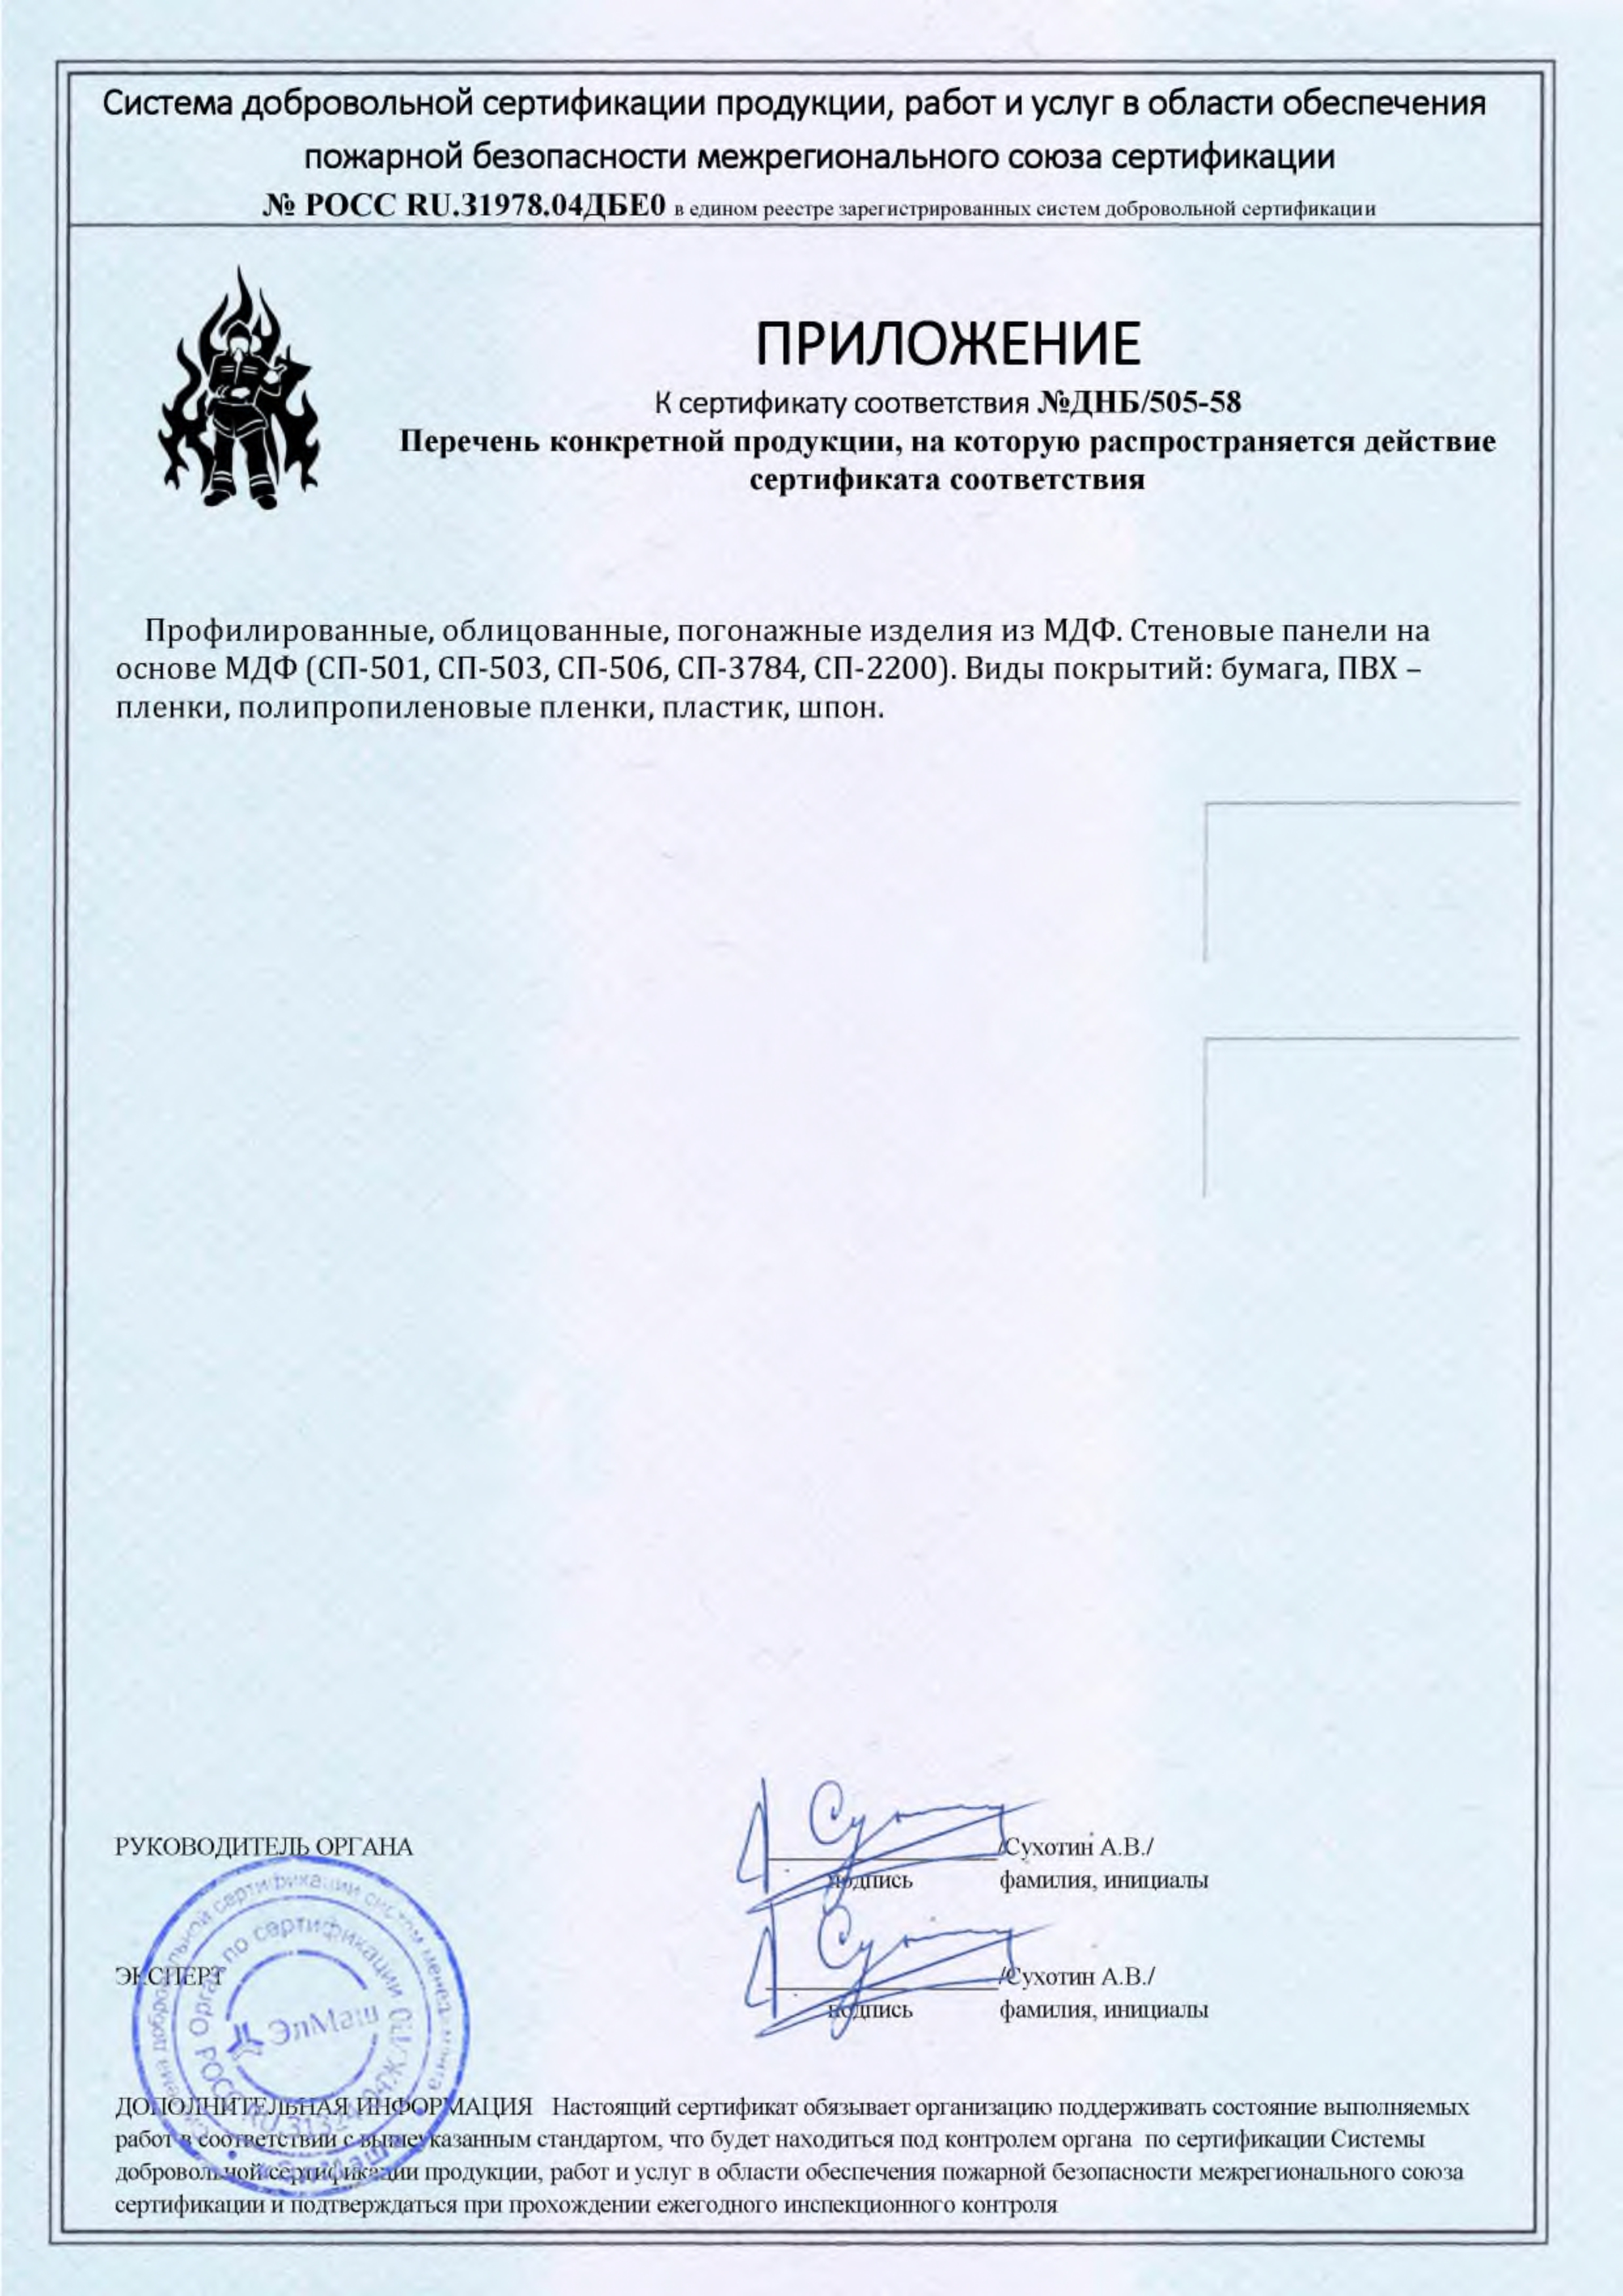 Сертификат соответствия №ДНБ-505-58 (2)